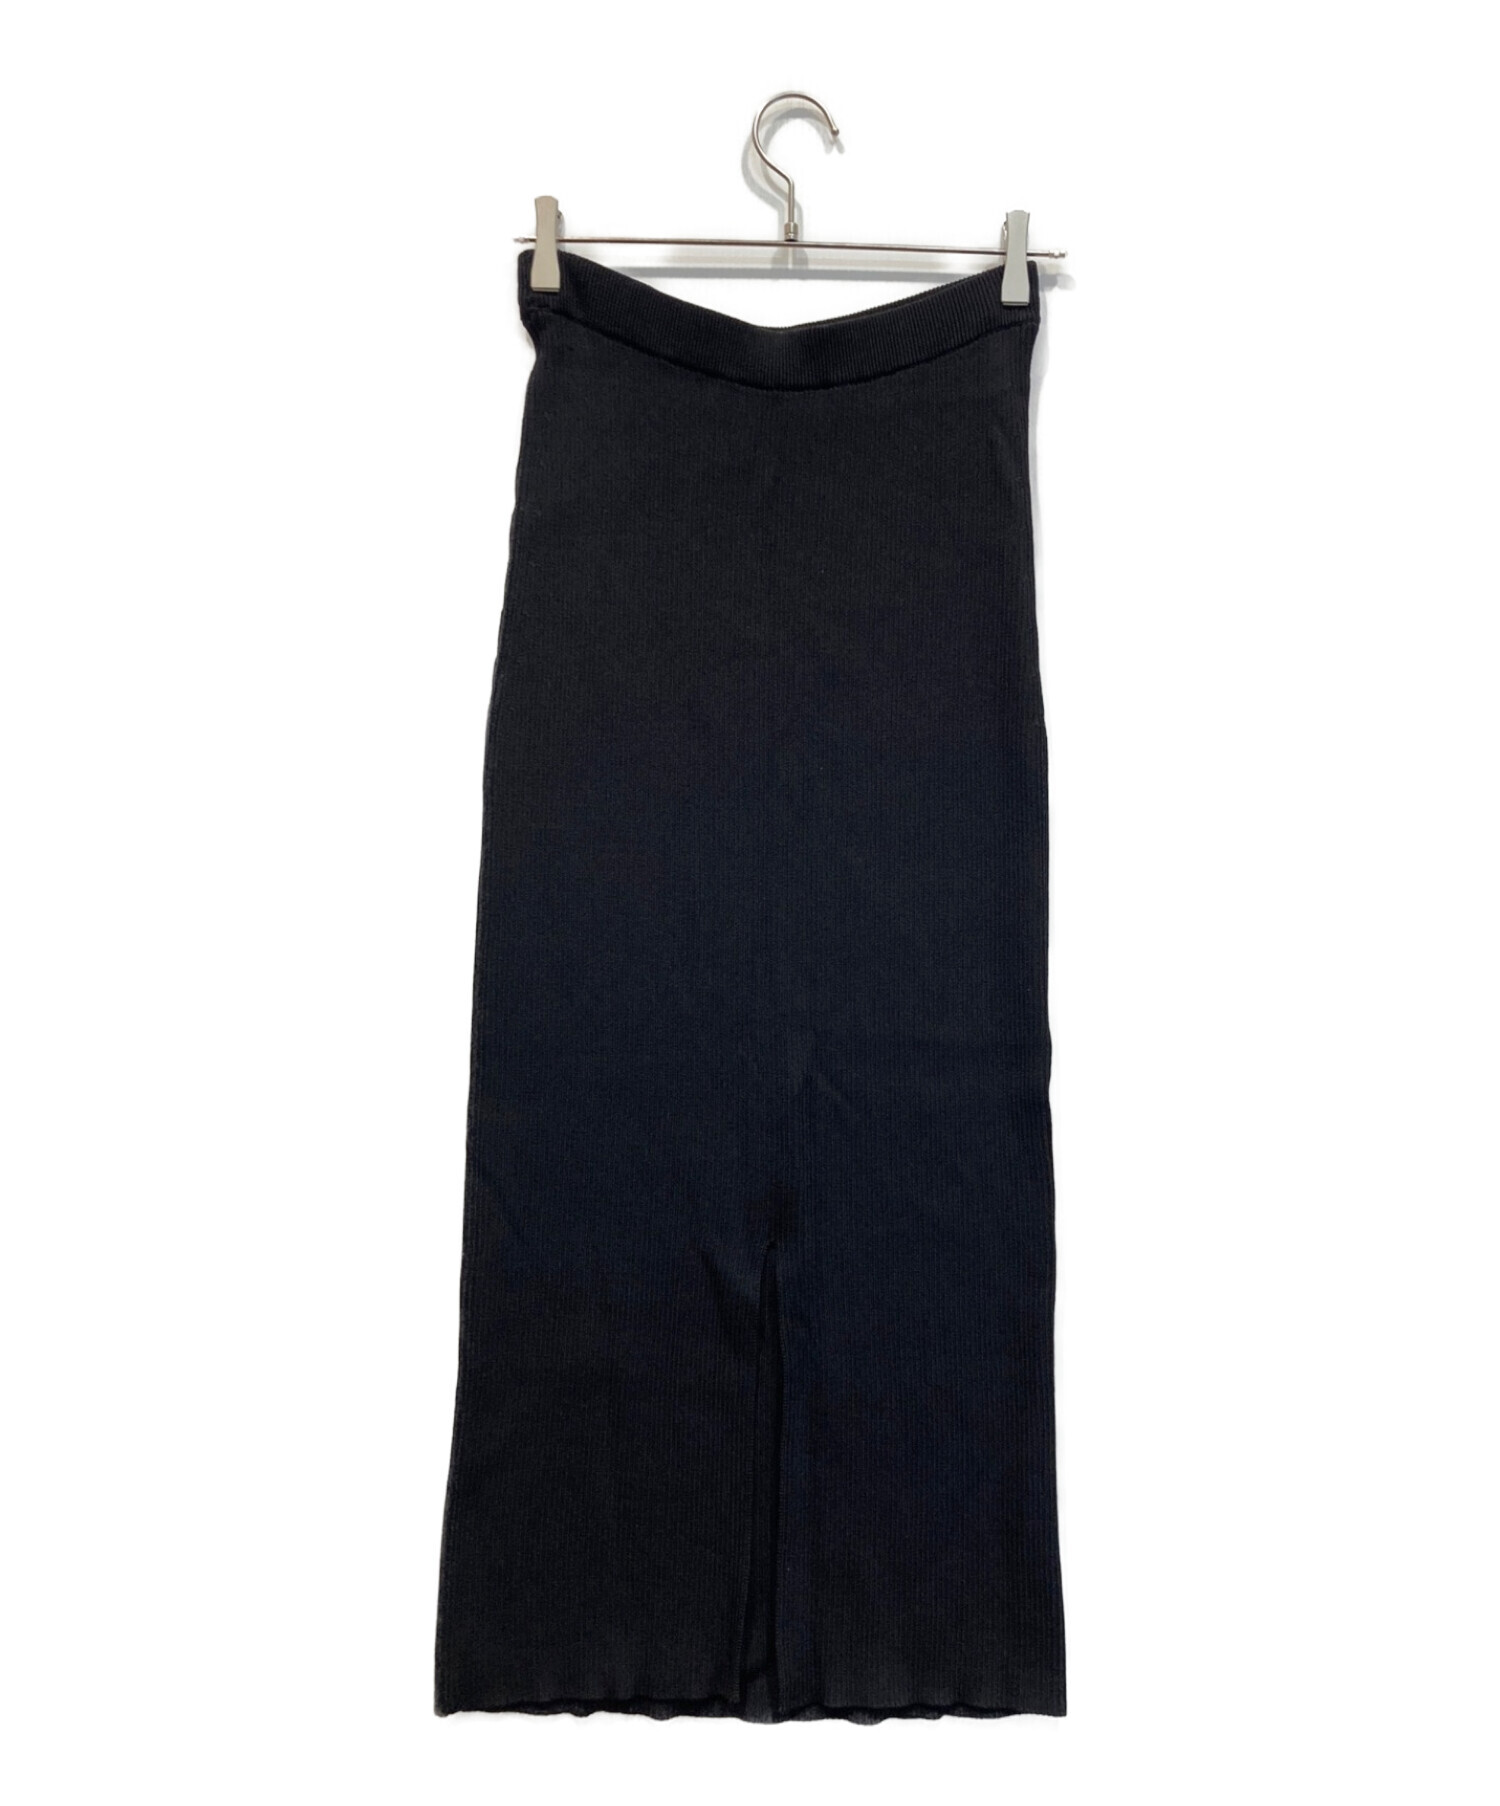 RIVE DROITE (リヴドロワ) マルチリブタイトスカート ブラック サイズ:Ｆ